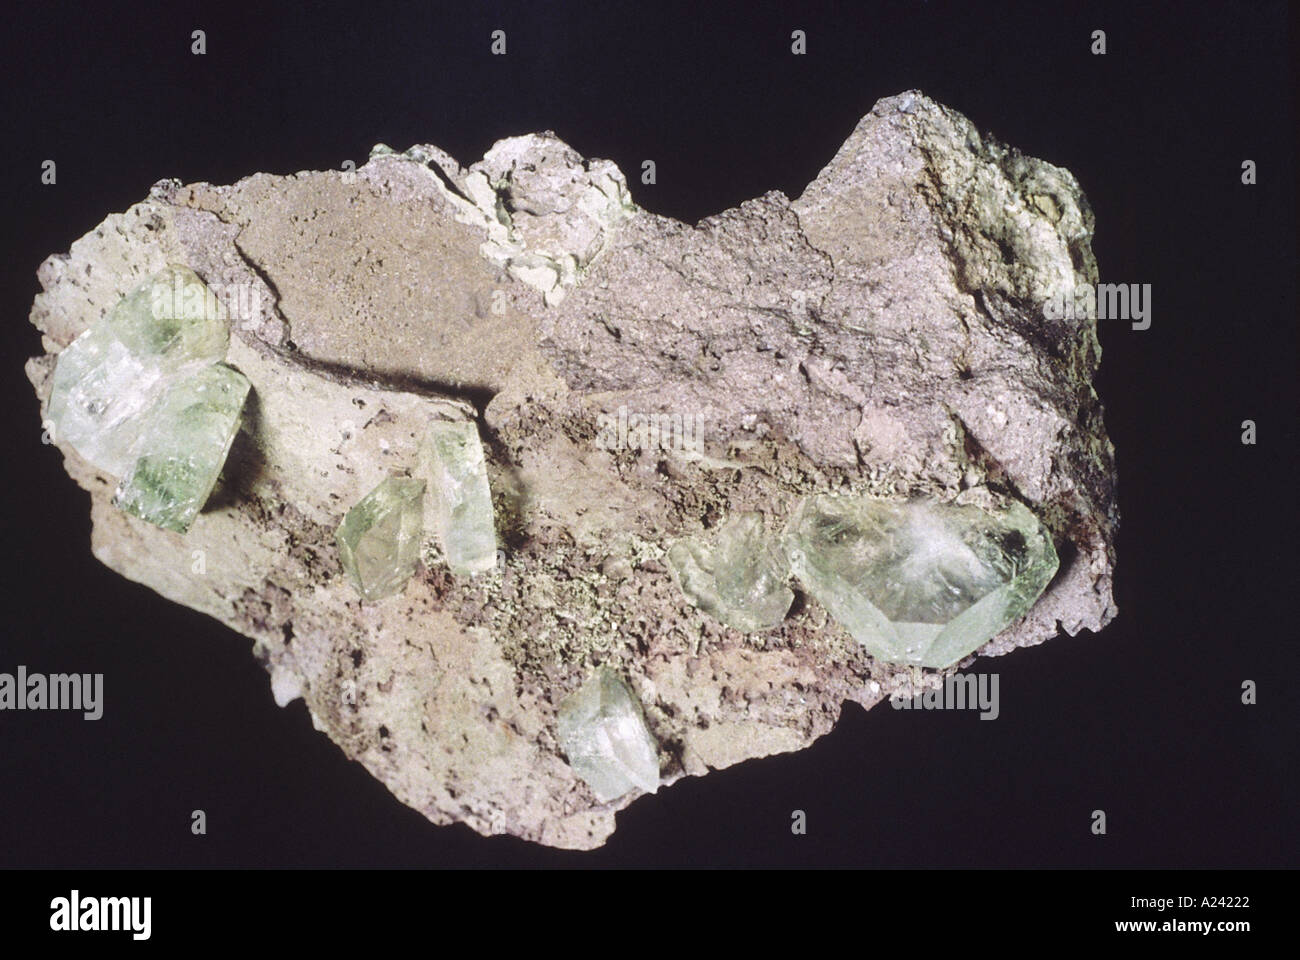 Apophyllite, una roca compuesta de claro, blanco, verde claro cristales estriados. Foto de stock